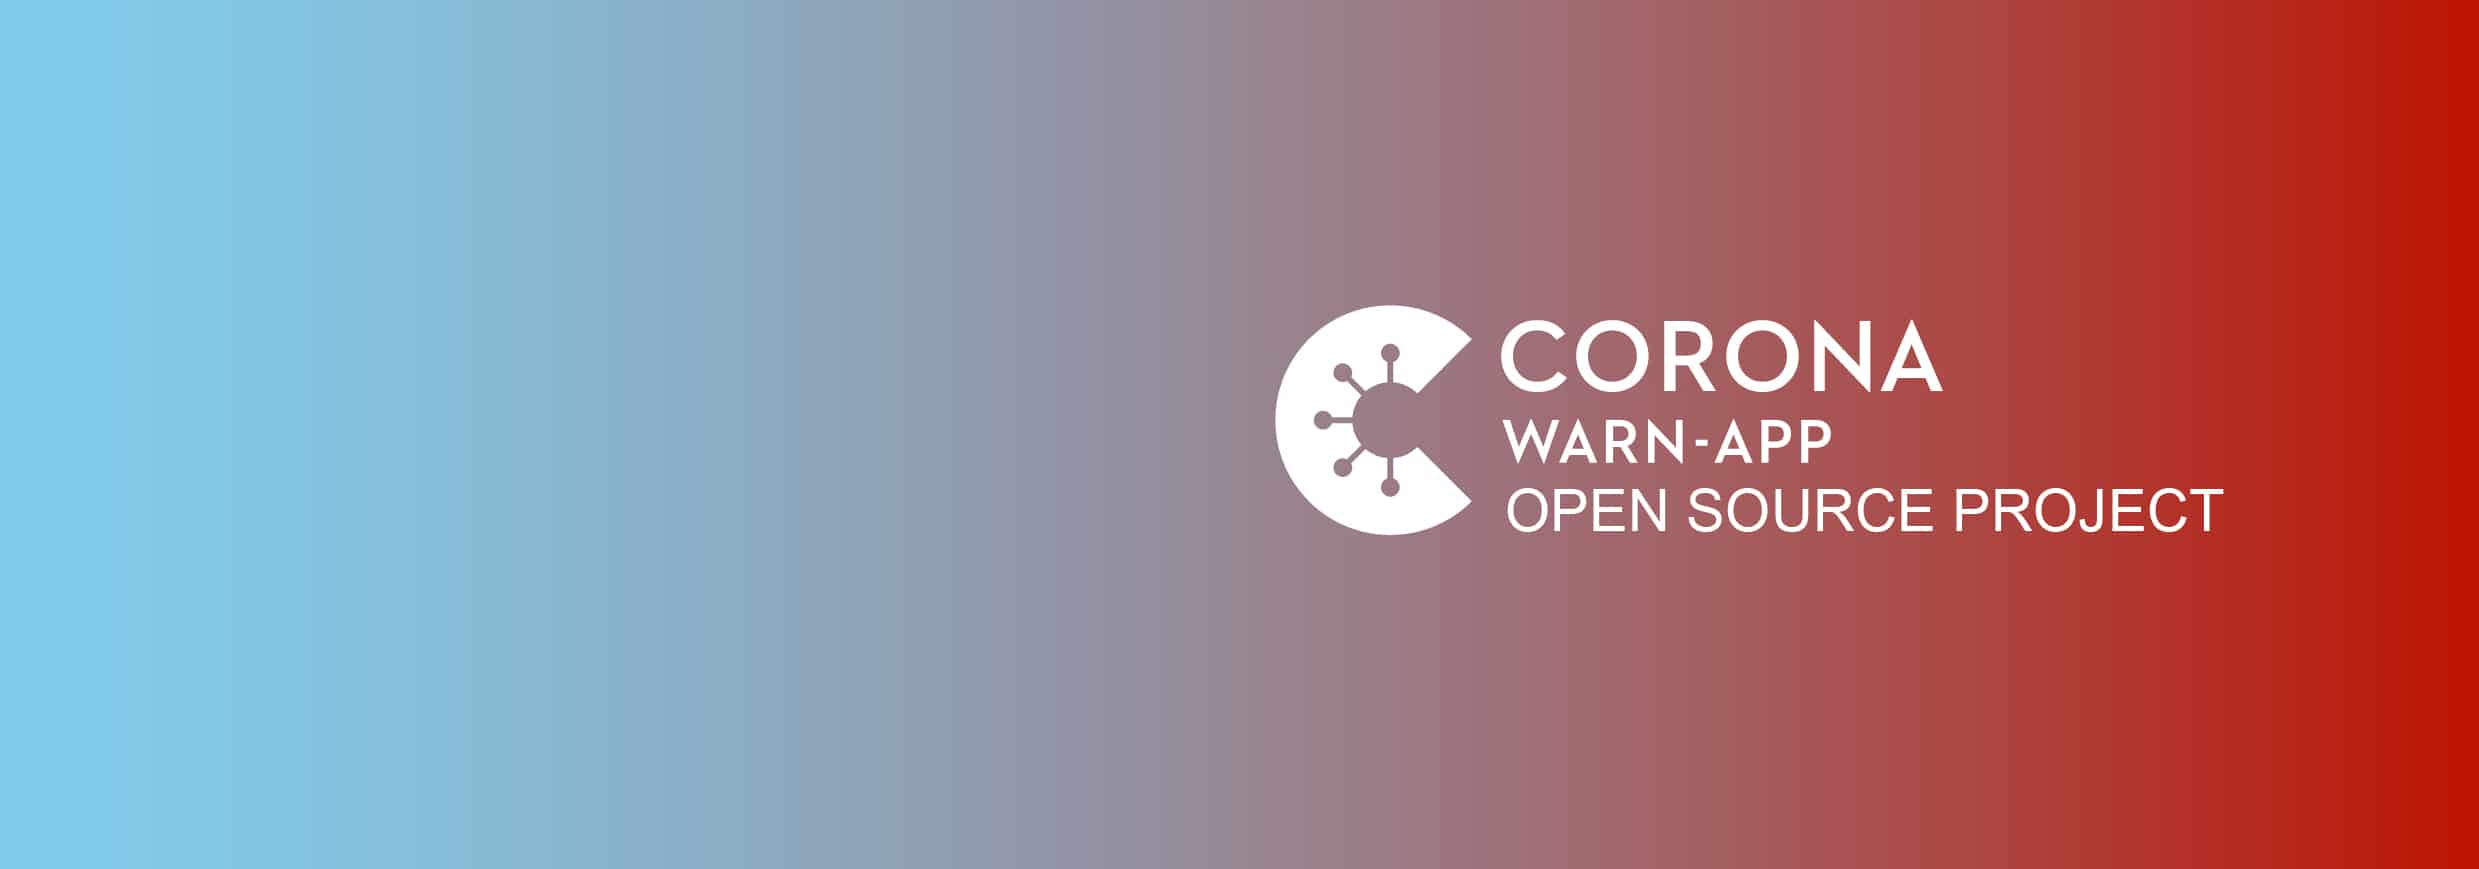 Warum es sich lohnt, die Corona-Warn-App zu installieren